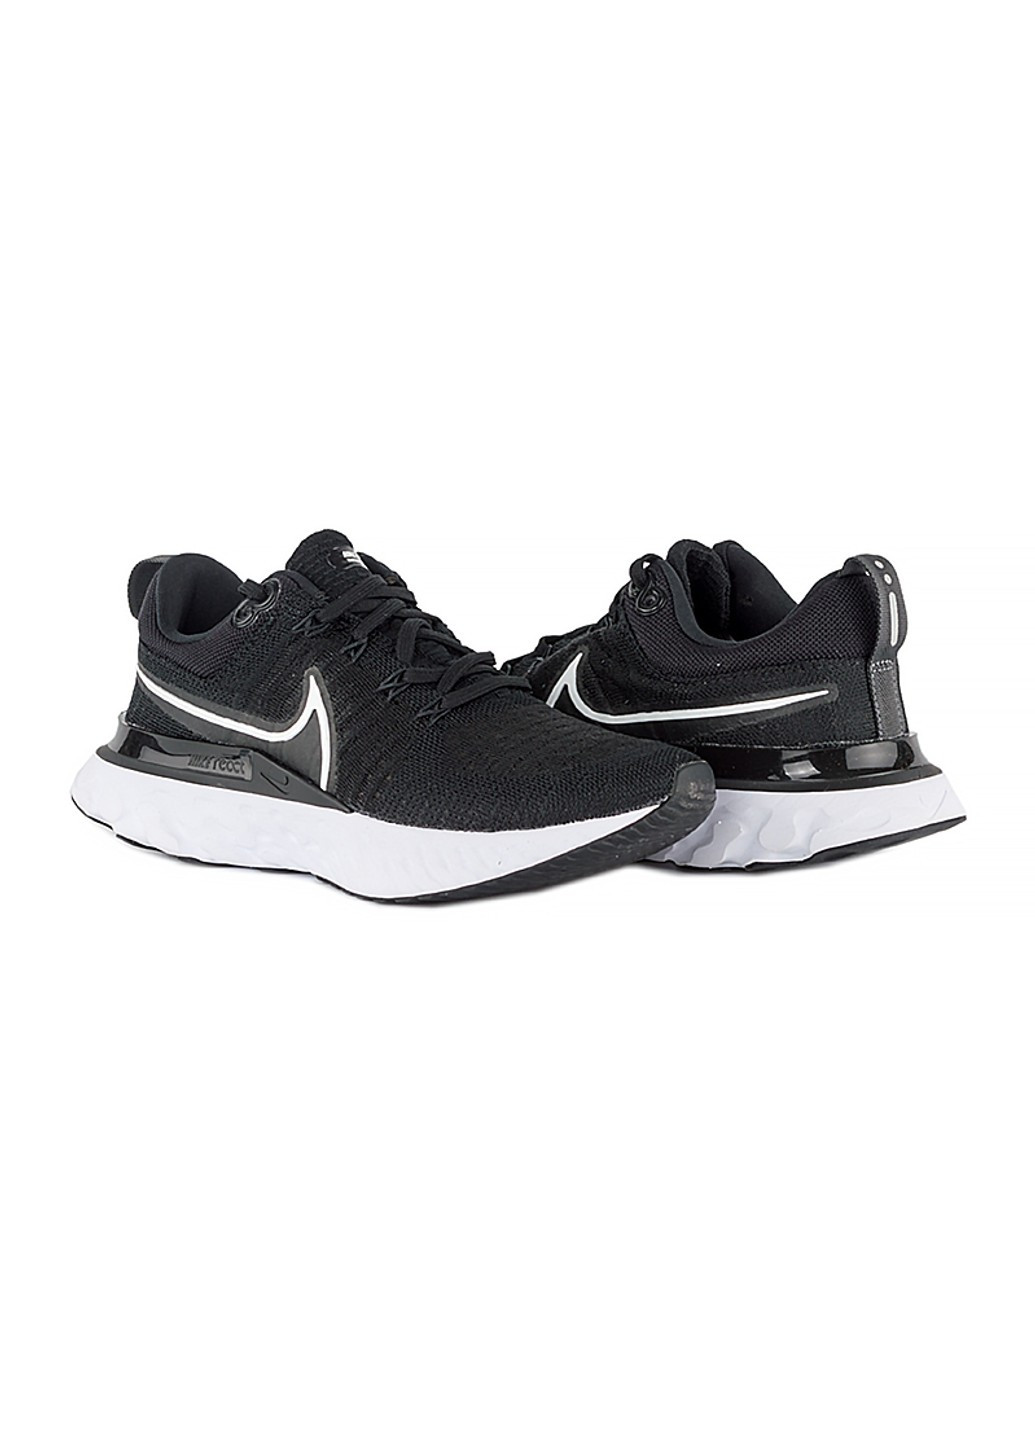 Чорні осінні кросівки w react infinity run fk 2 Nike